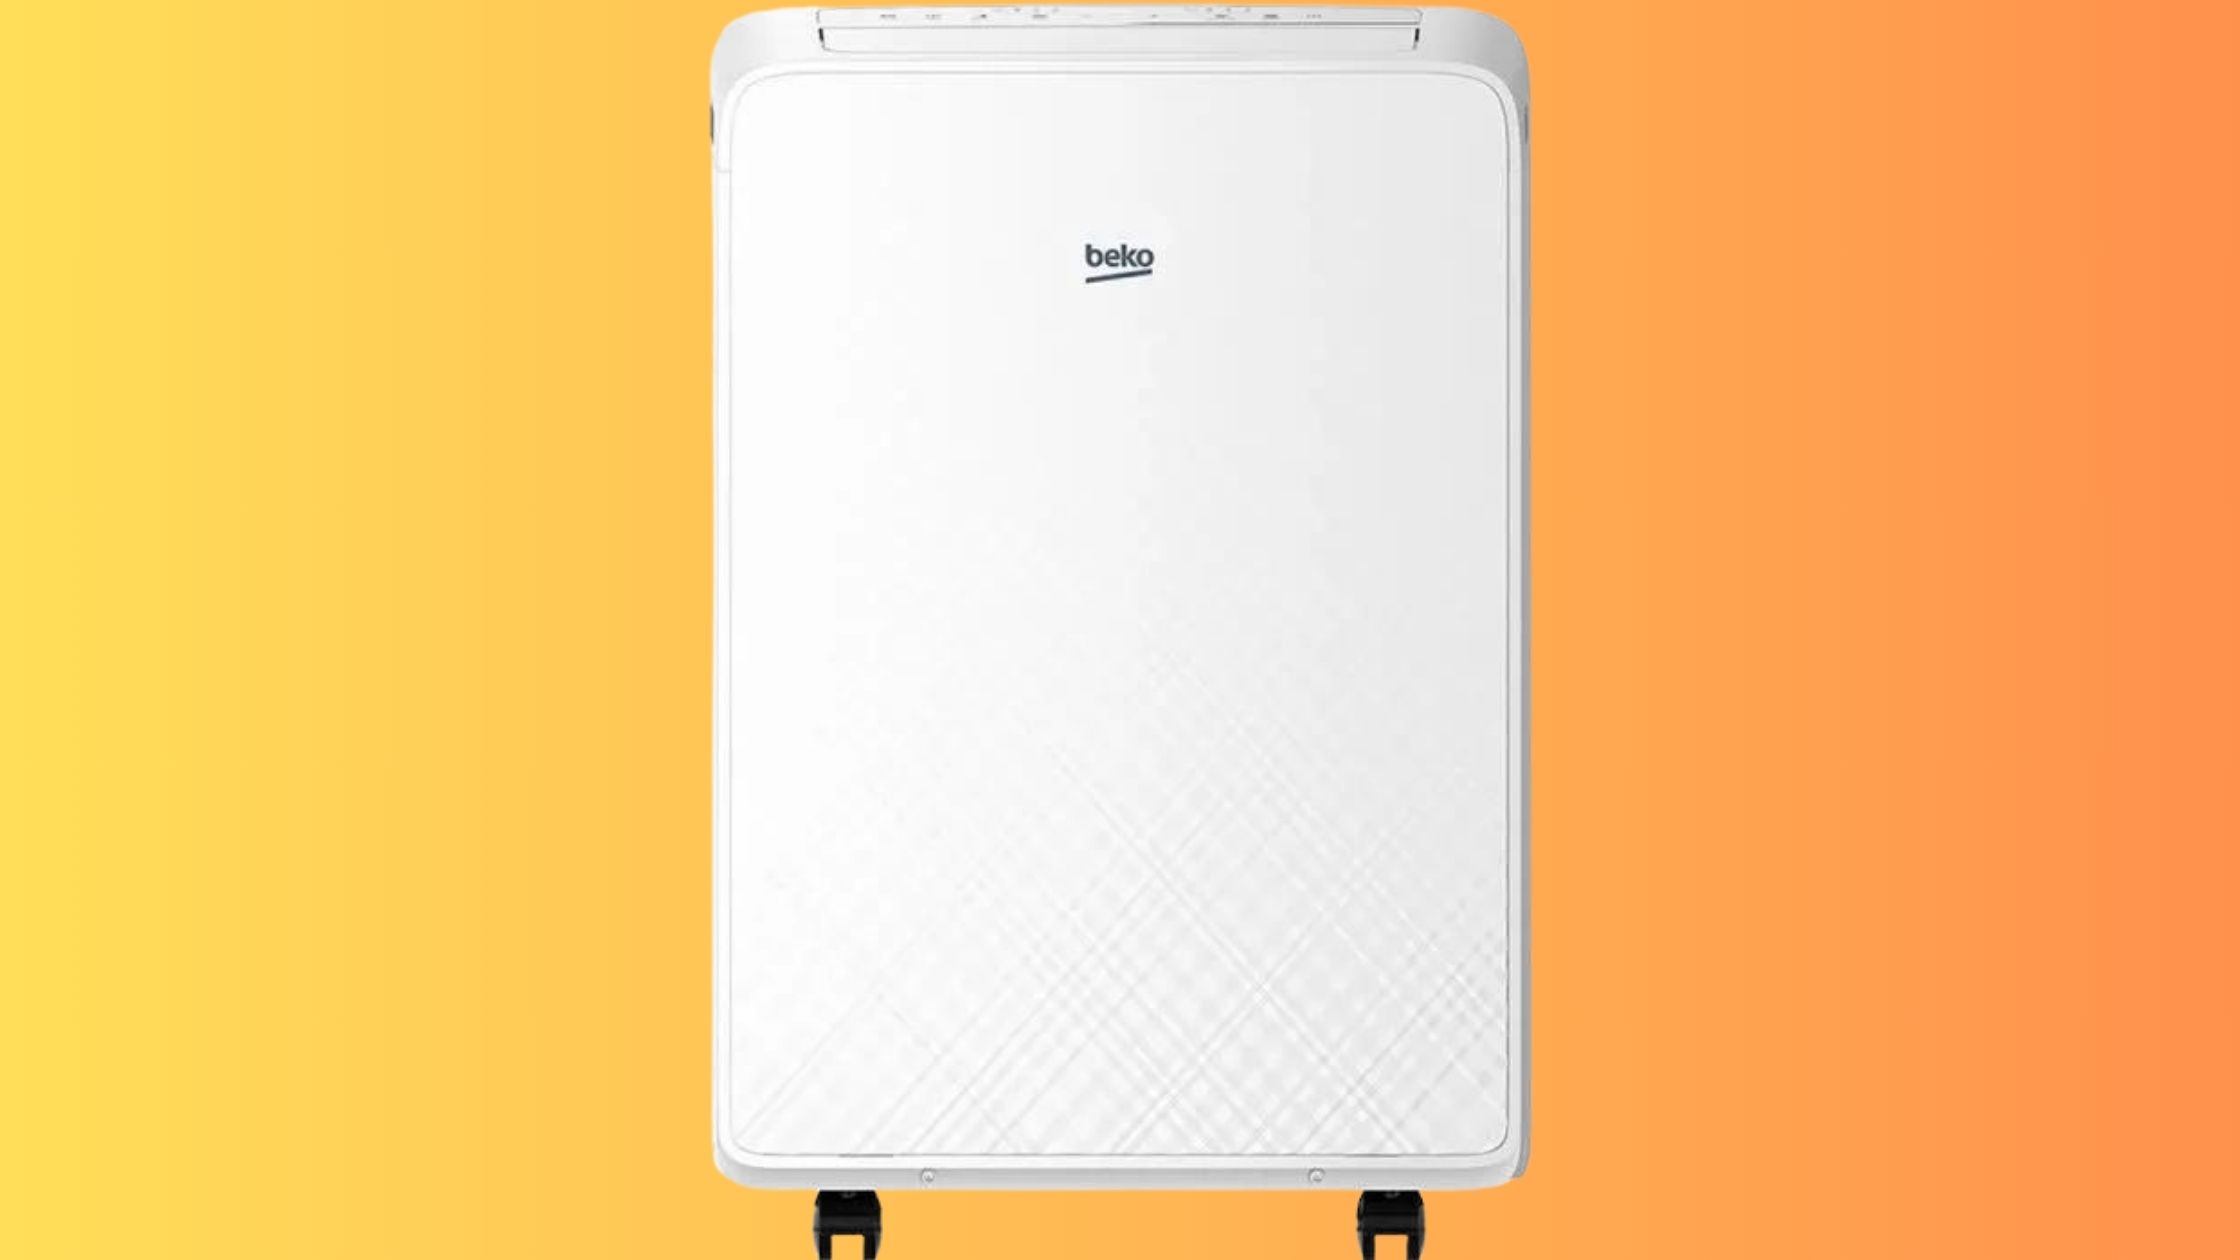 Soldes Cdiscount : -90 € sur ce climatiseur mobile Beko à saisir d'urgence pour lutter contre la chaleur © Cdiscount